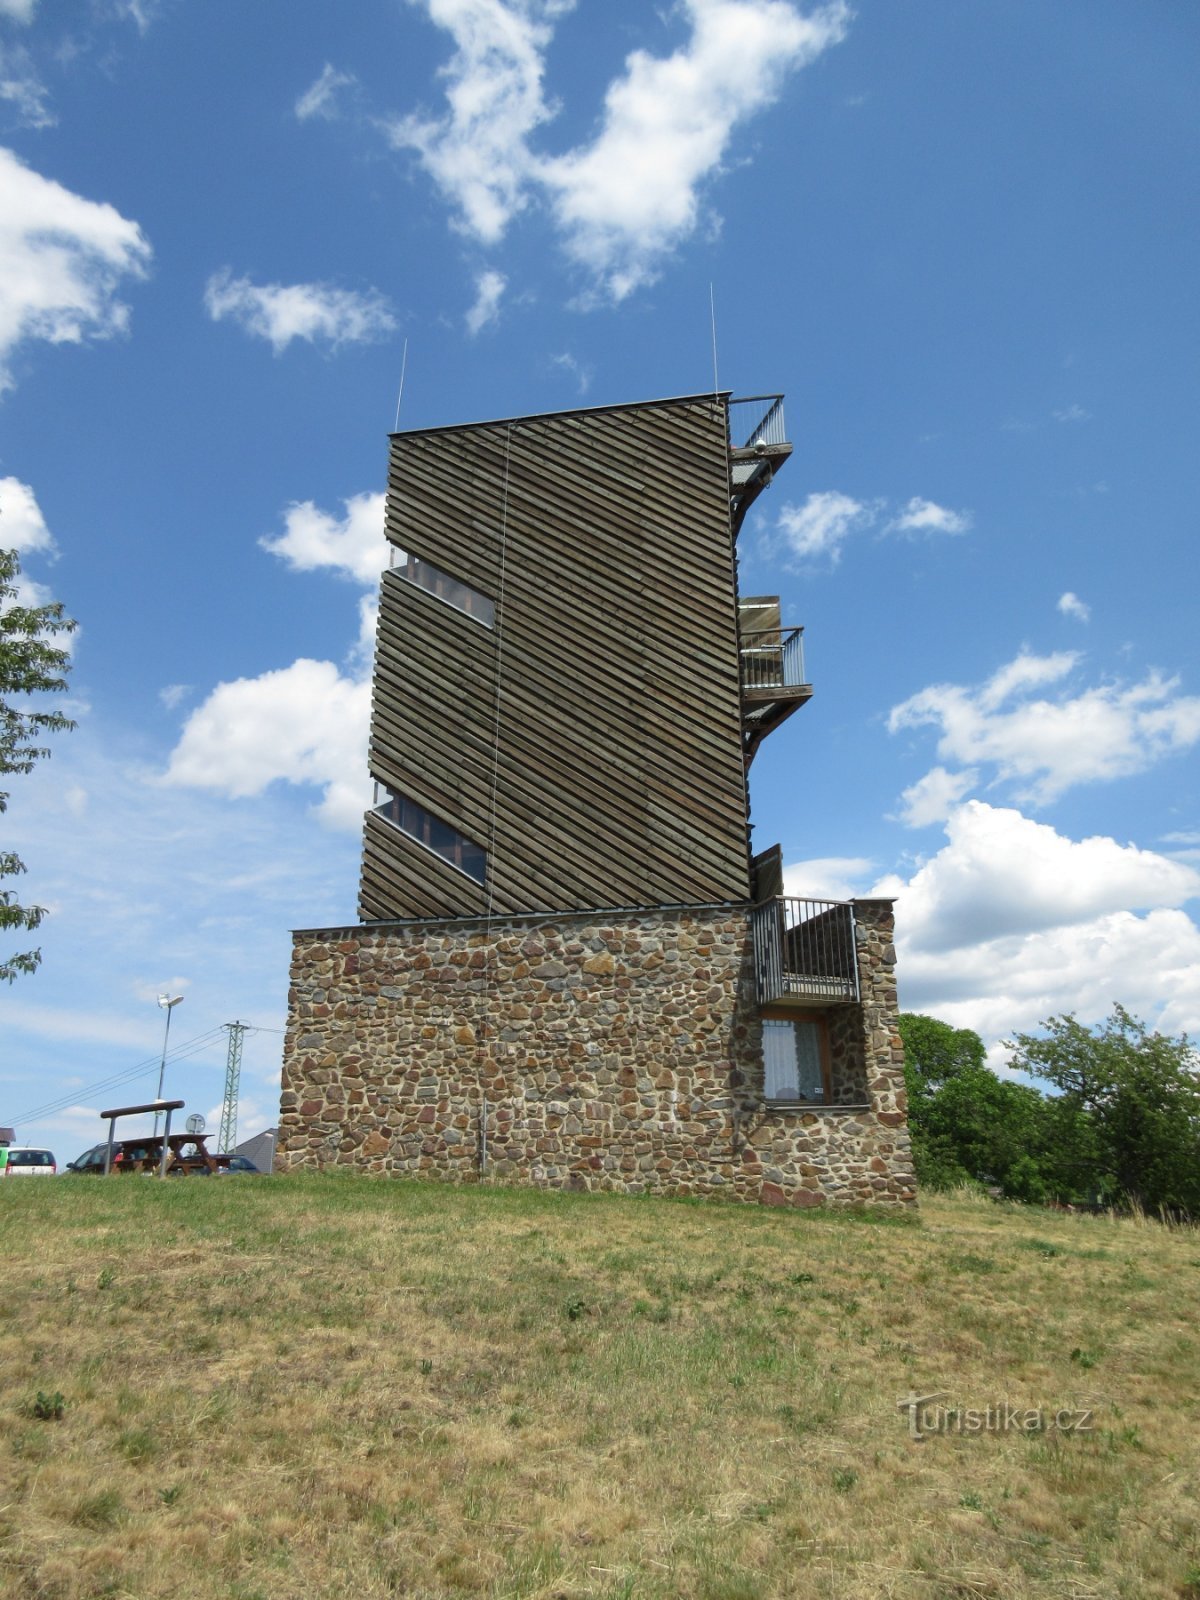 Velká Buková – village and lookout tower